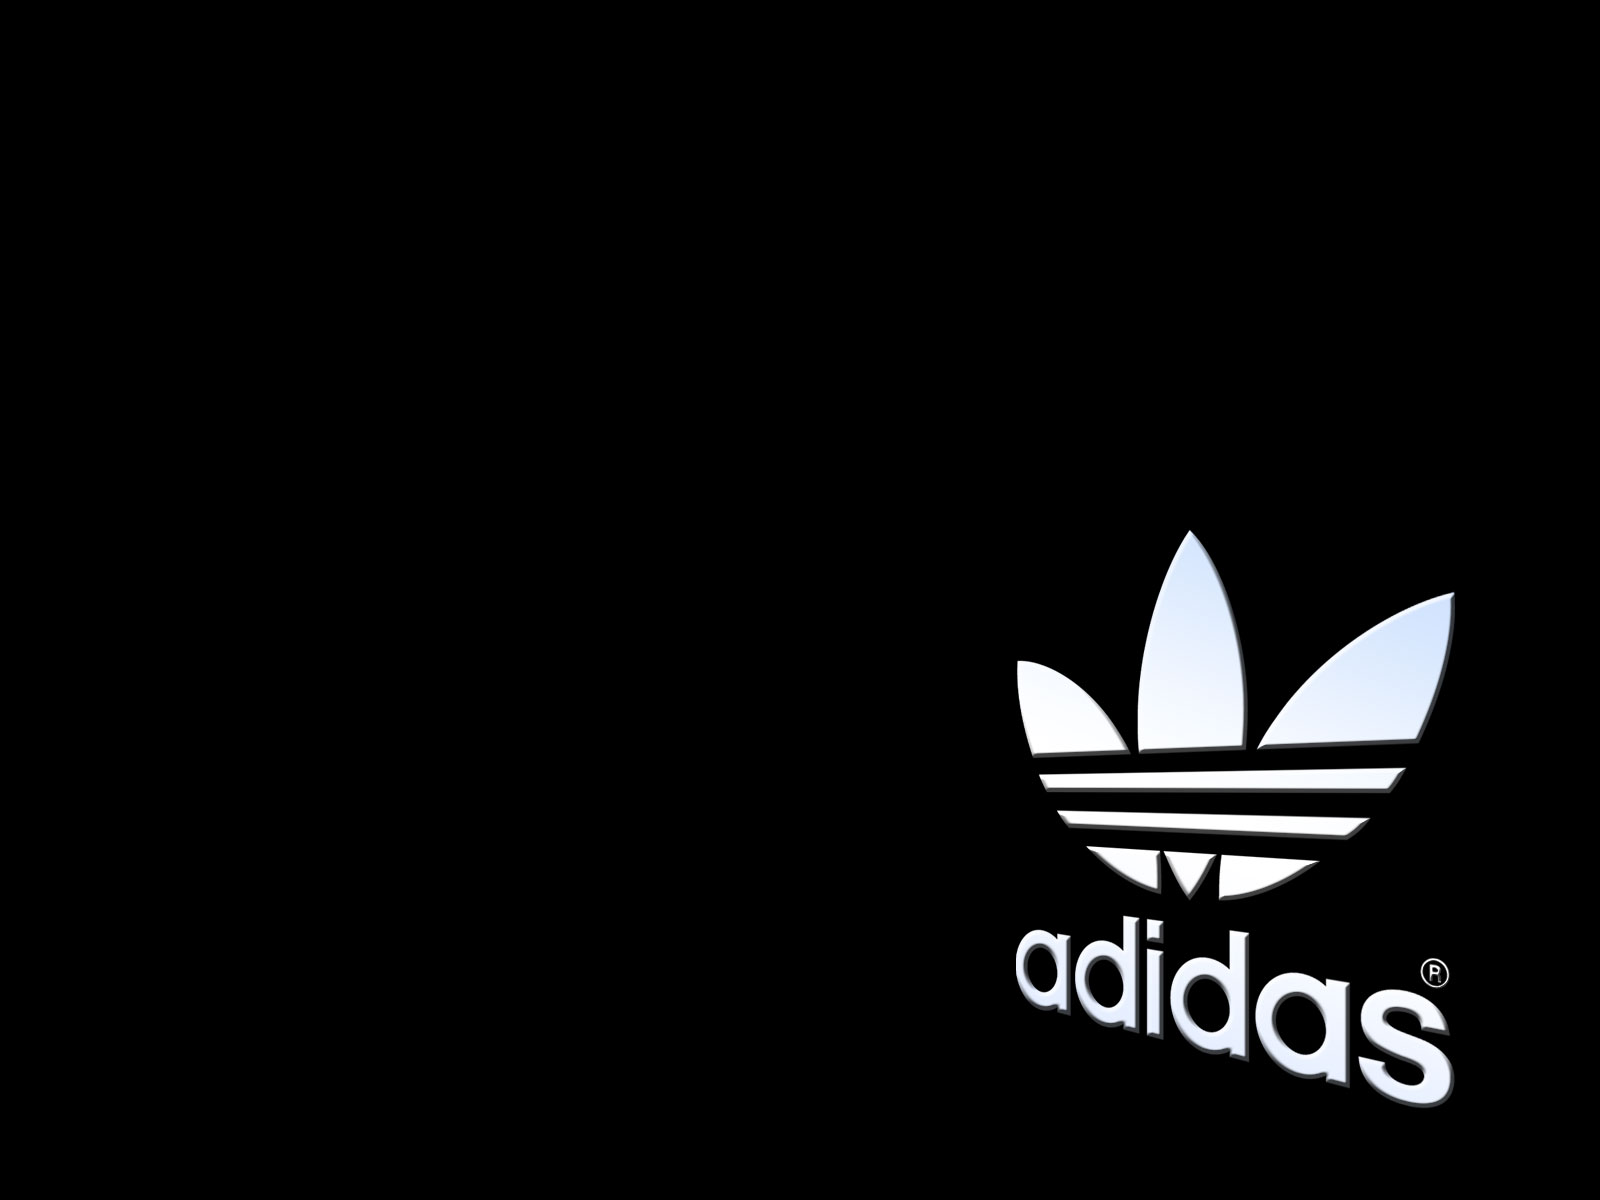 Adidas logo - Free desktop wallpapers download